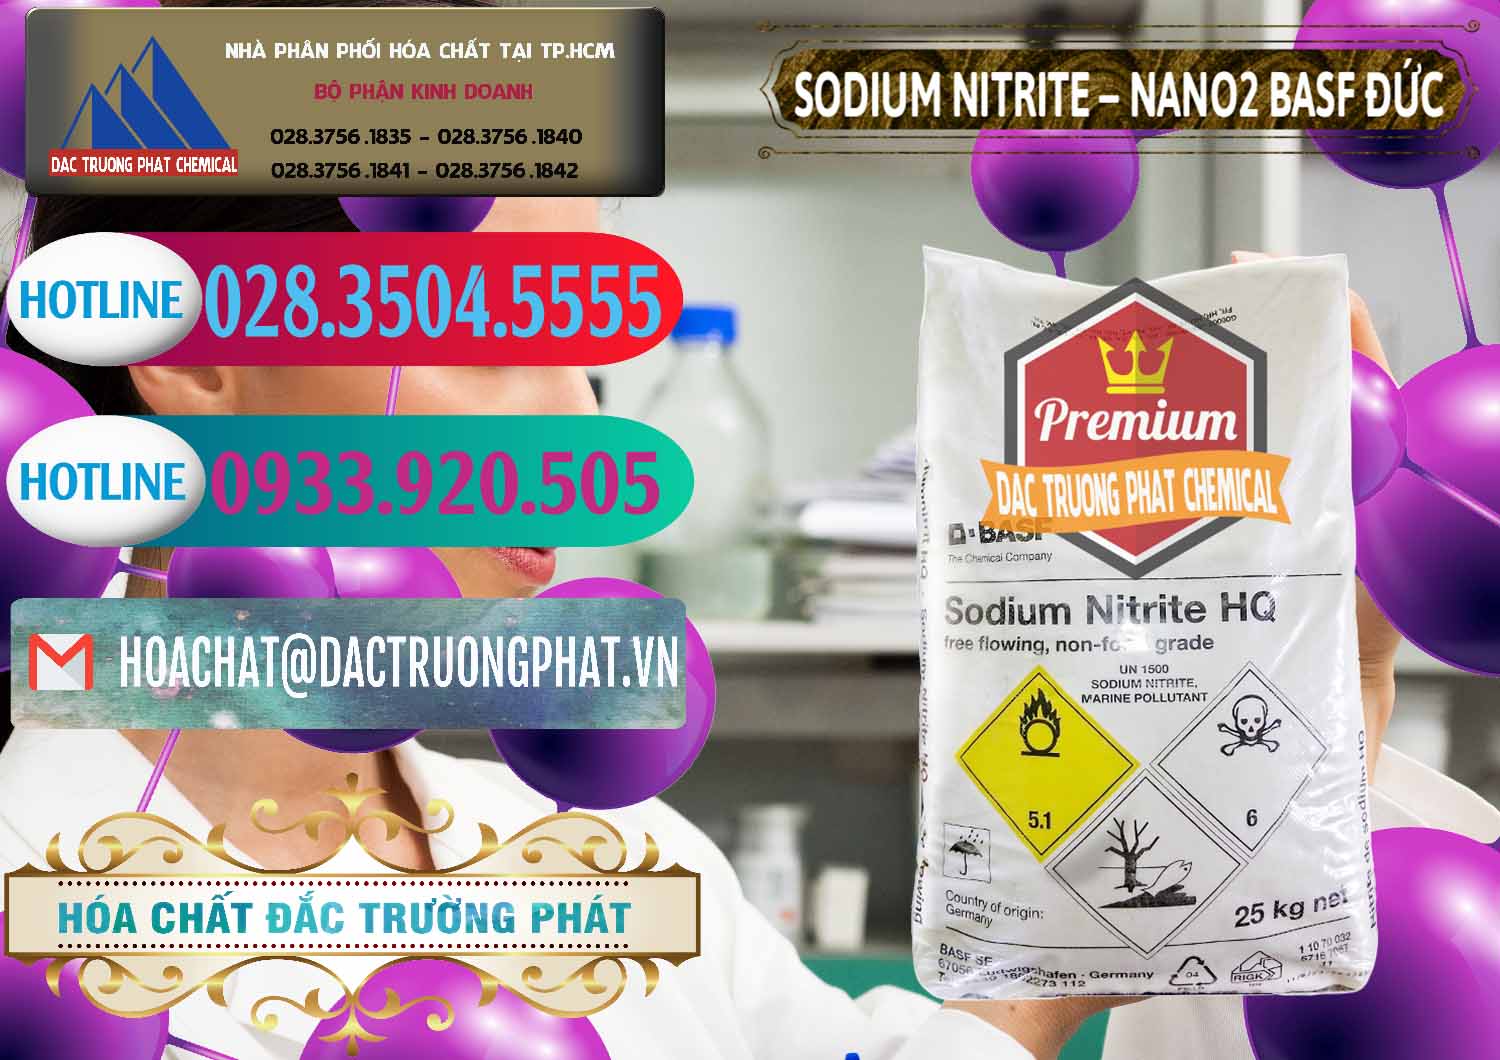 Nơi phân phối & bán Sodium Nitrite - NANO2 Đức BASF Germany - 0148 - Chuyên phân phối và kinh doanh hóa chất tại TP.HCM - truongphat.vn